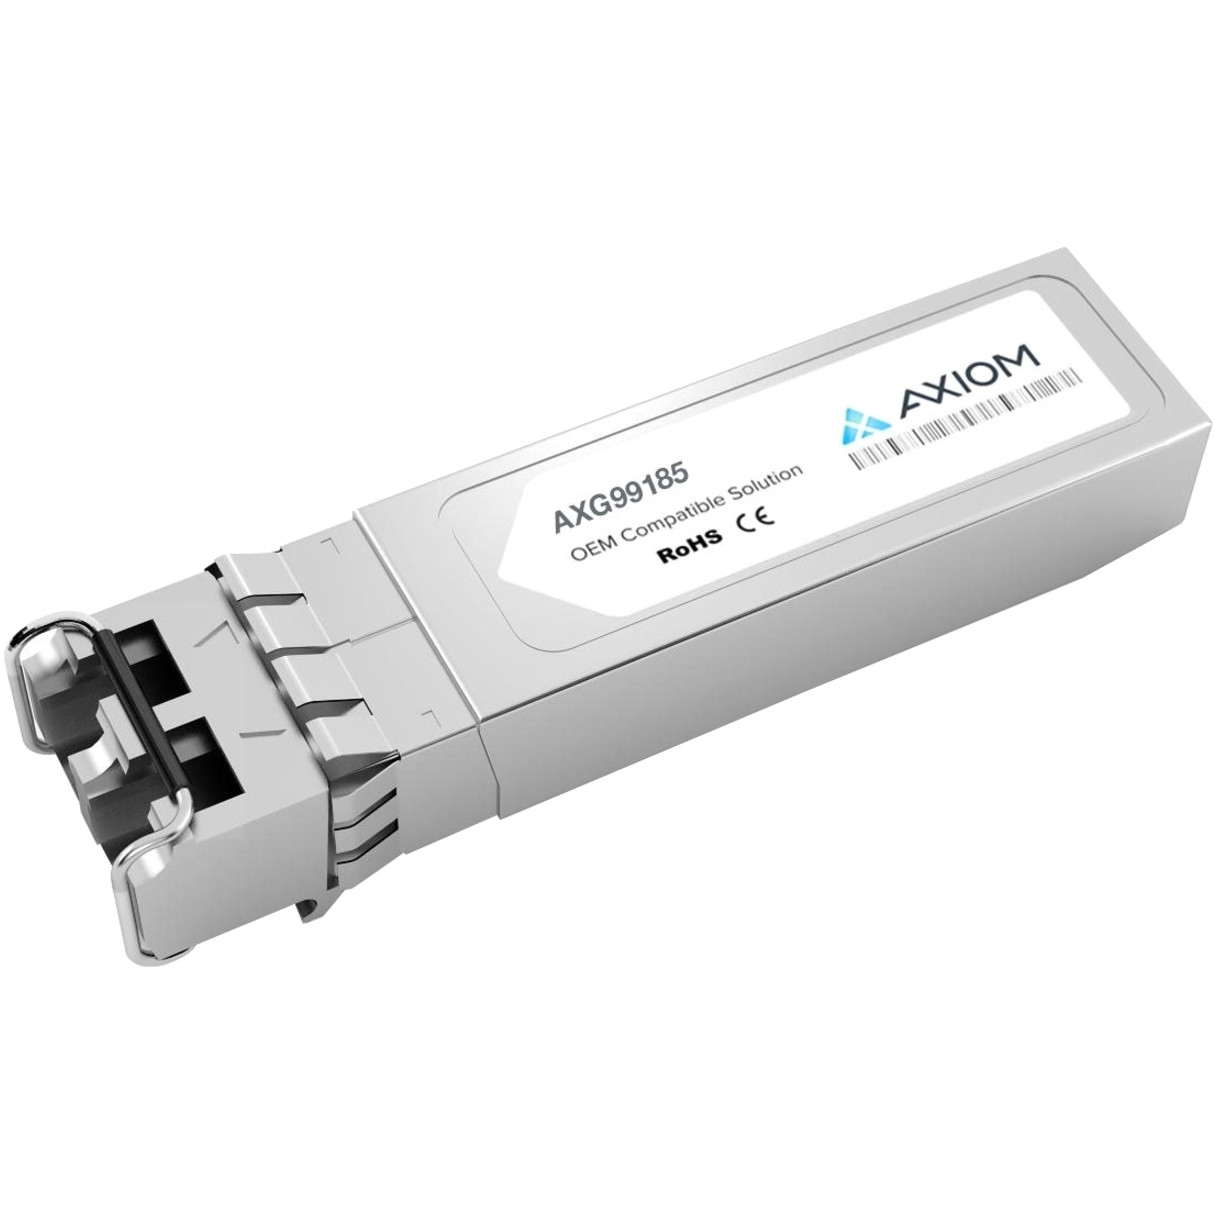 Axiom Memory Solutions 10GBASE-LR SFP+ Transceiver for ArubaJ9151ETAA Compliant100% Aruba Compatible 10GBASE-LR SFP+ AXG99185